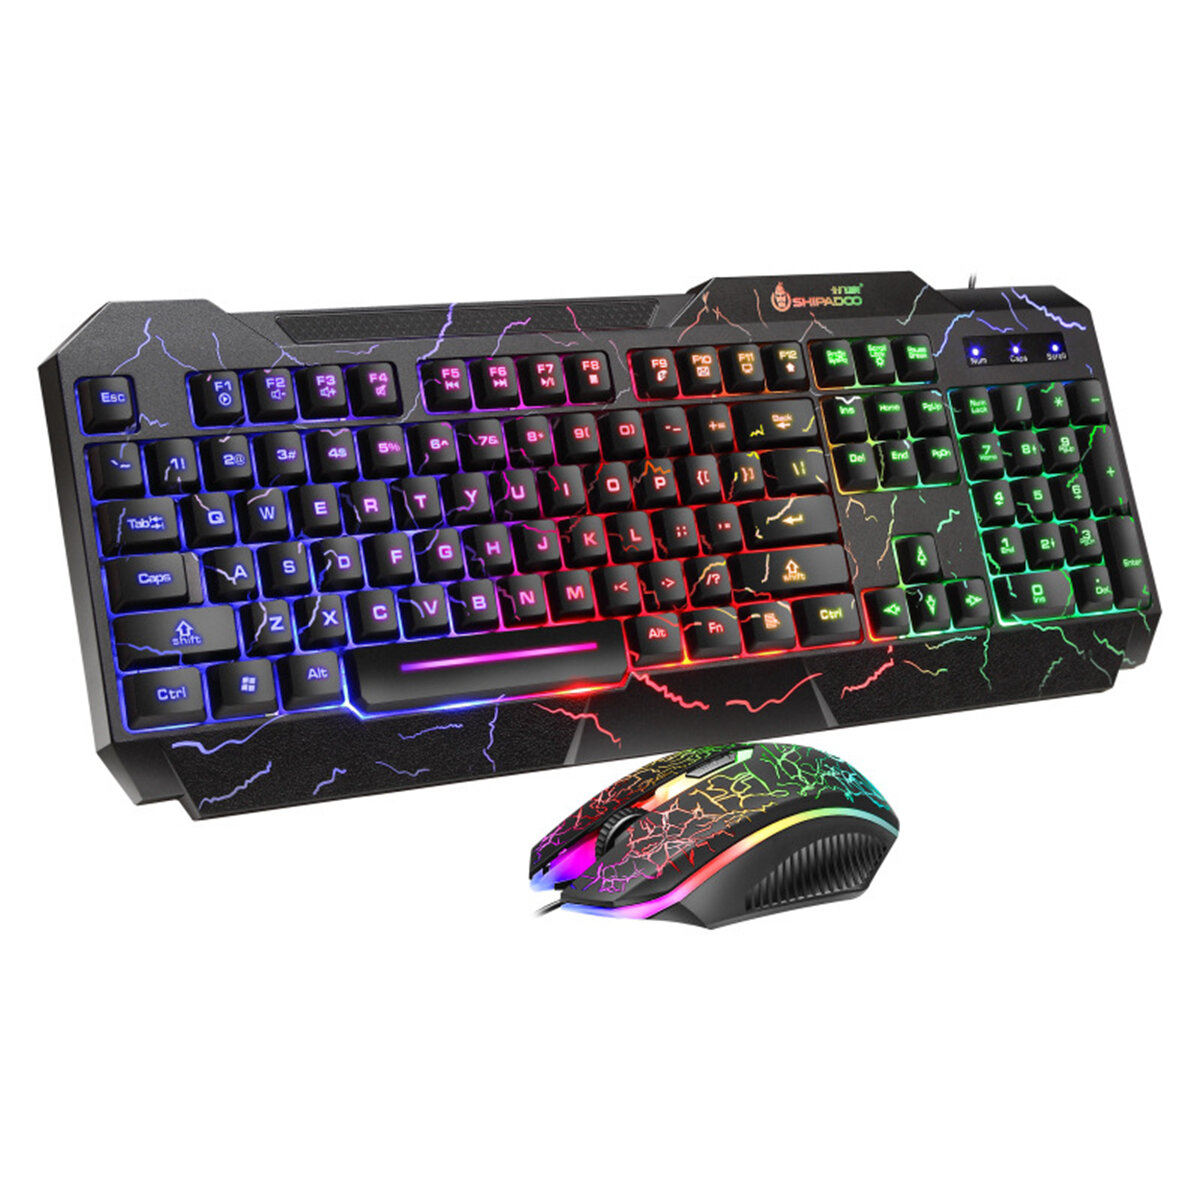 D620 Gaming Keyboard & Mouse Set 104 Keys USB Wired Colorful Crack LED Backlit Gaming Keyboard 1600d